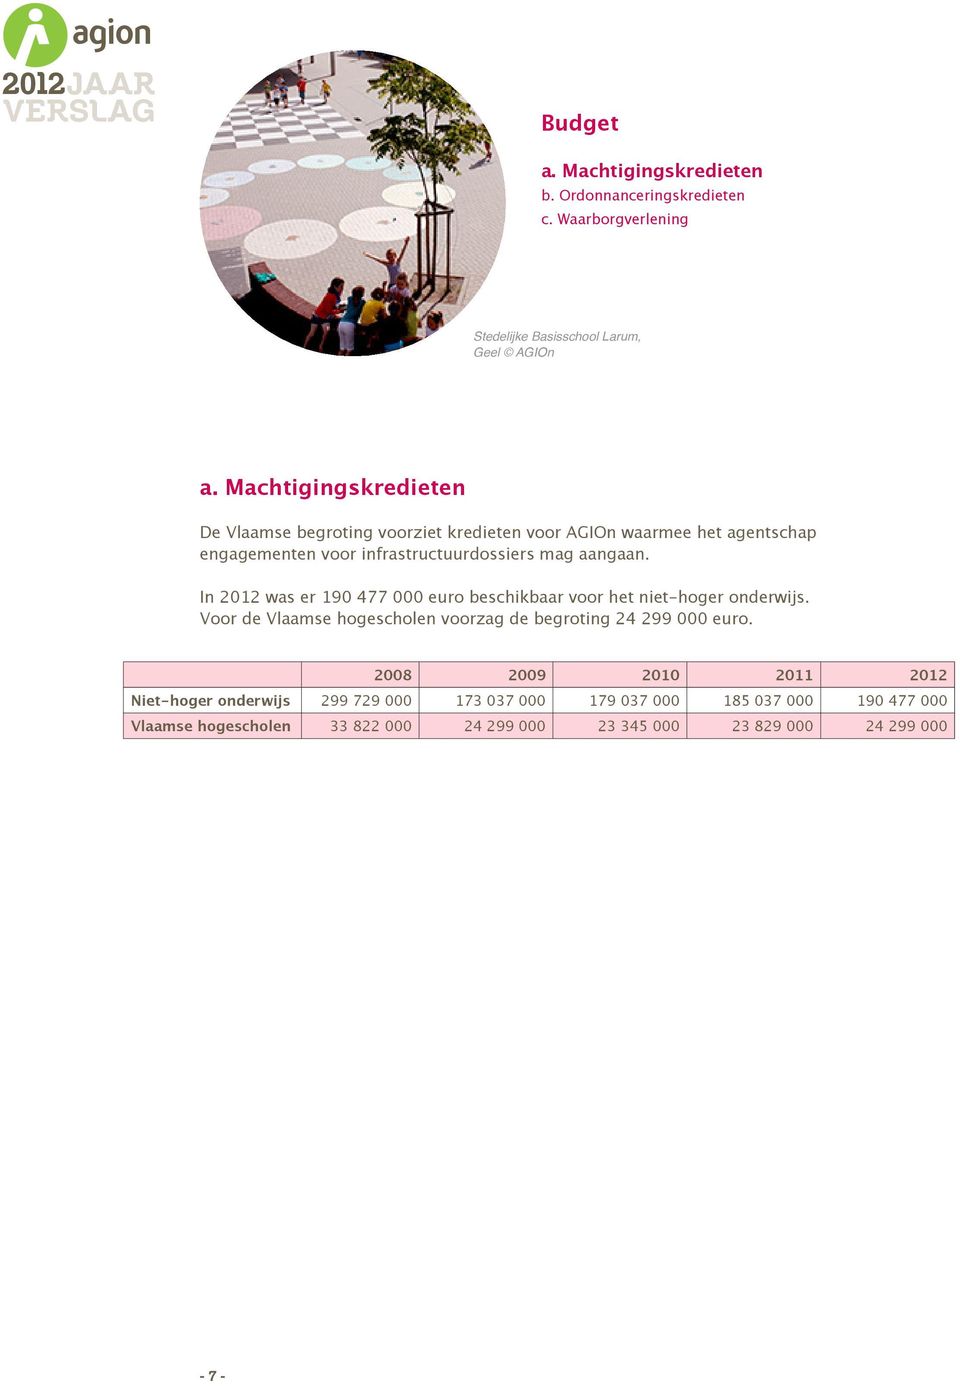 In 2012 was er 190 477 000 euro beschikbaar voor het niet-hoger onderwijs. Voor de Vlaamse hogescholen voorzag de begroting 24 299 000 euro.